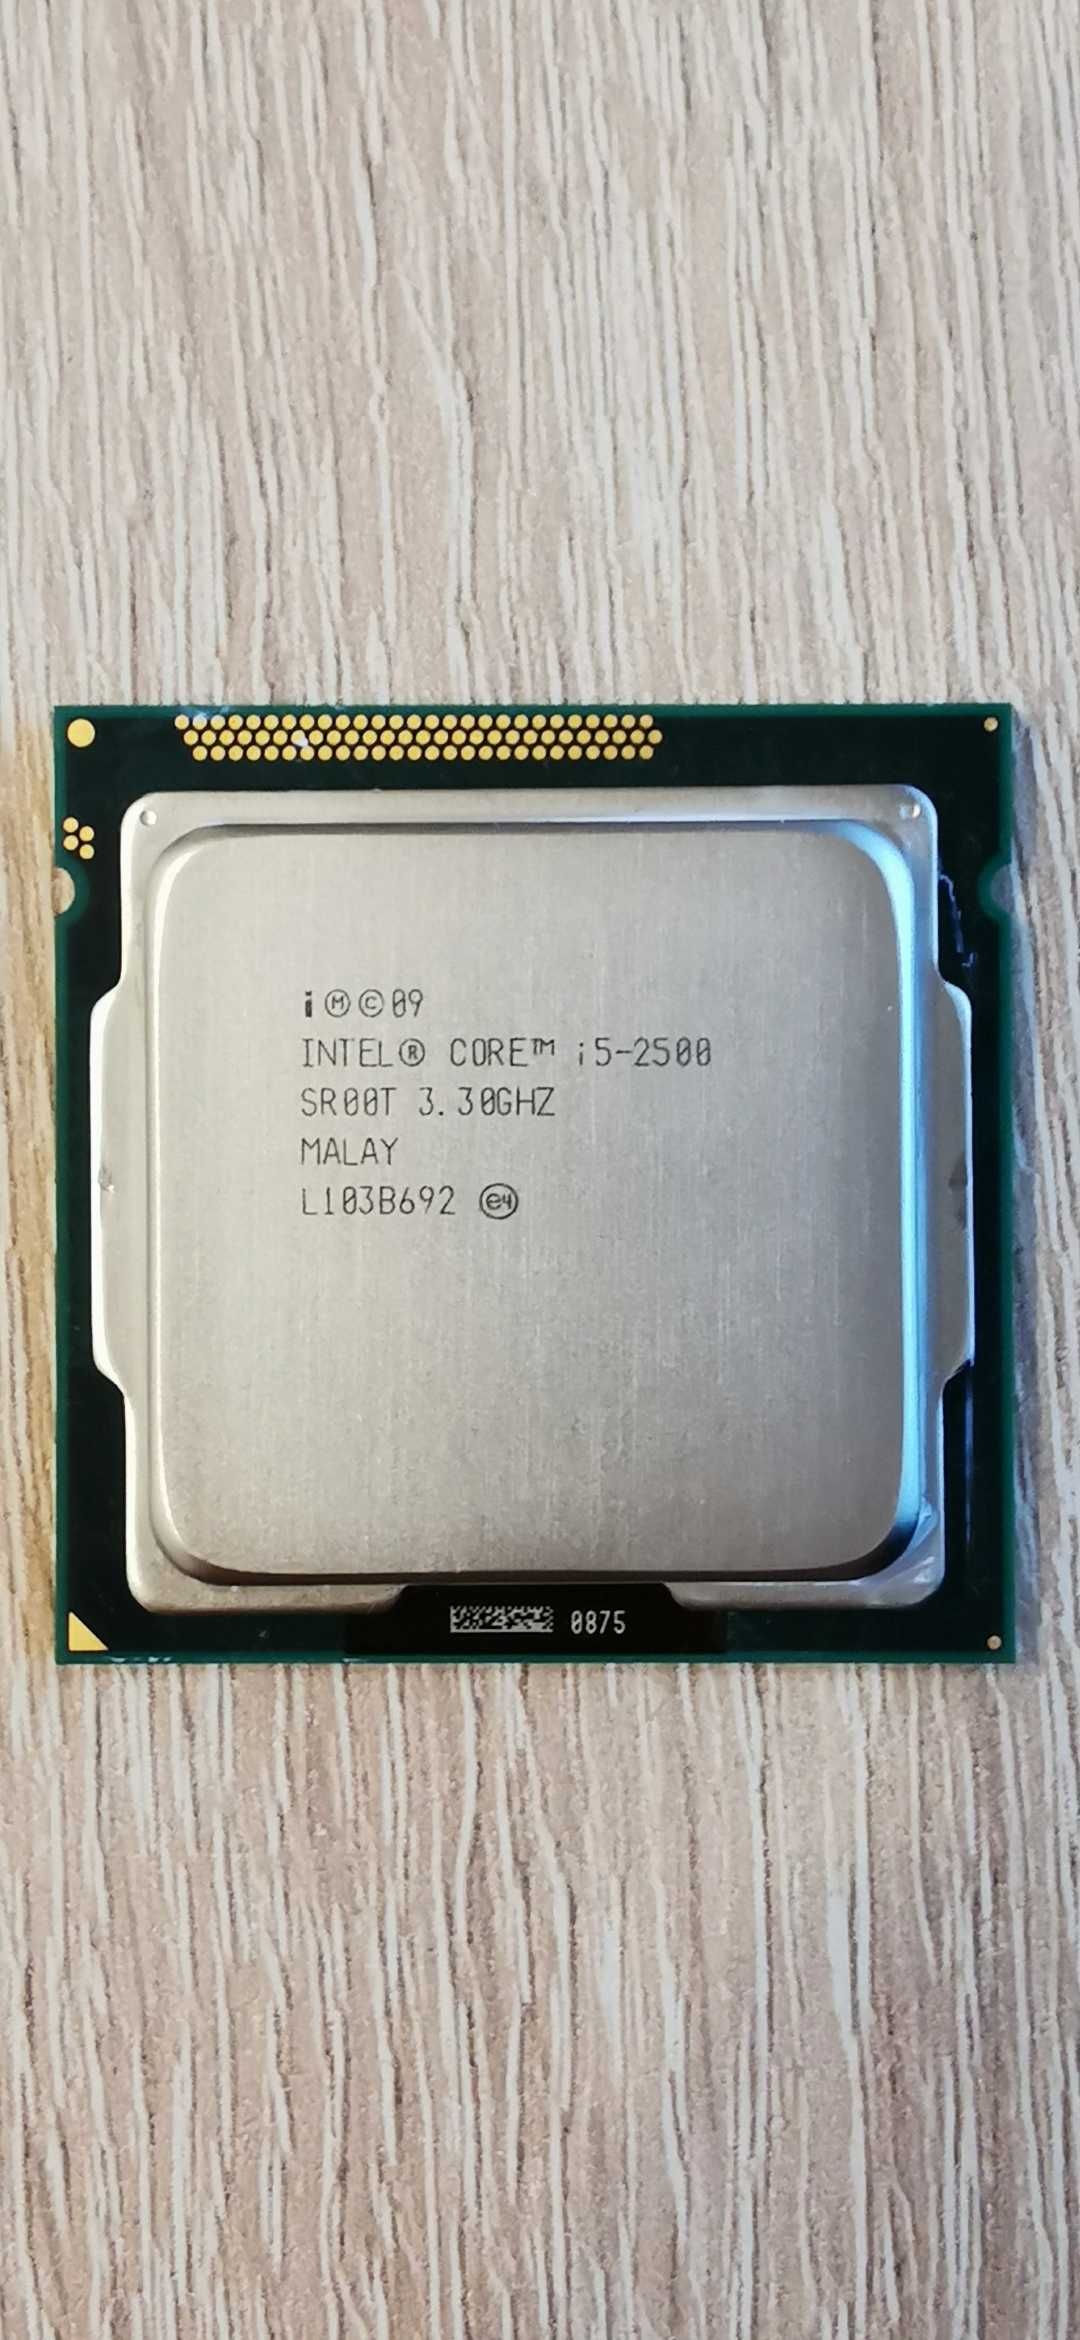 Kit MB MSI+CPU Intel i5 2500+8GB RAM DDR3+Cooler CPU ZT+Sursa 750v